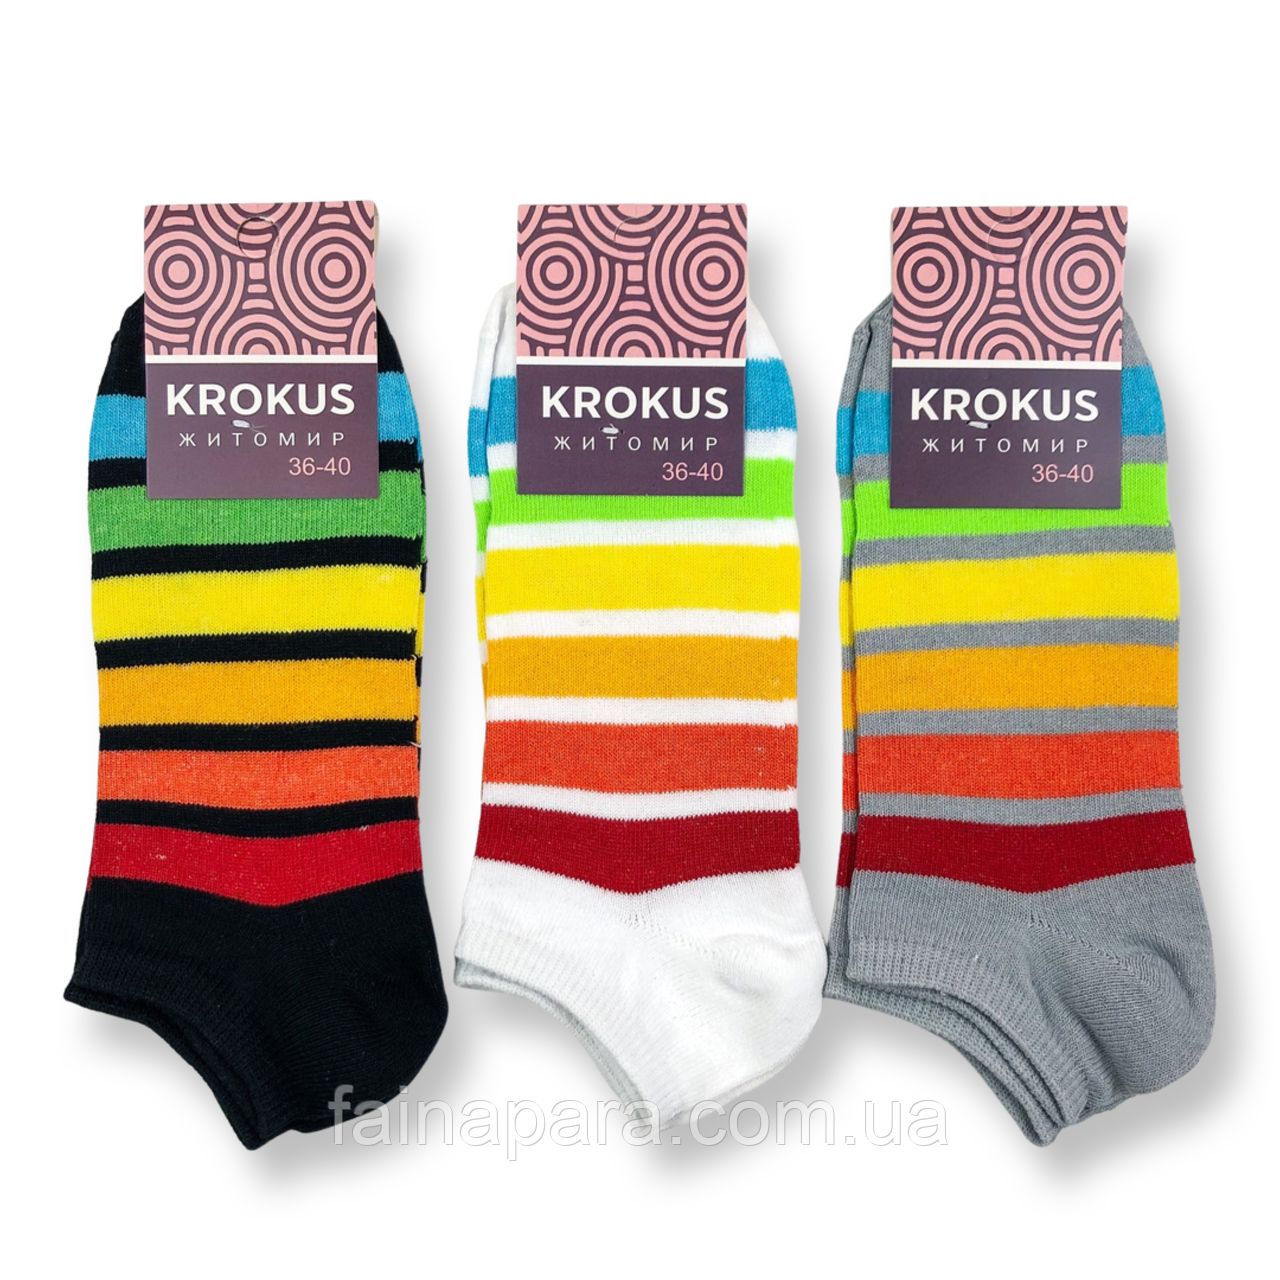 Жіночі короткі шкарпетки у смужку Krokus